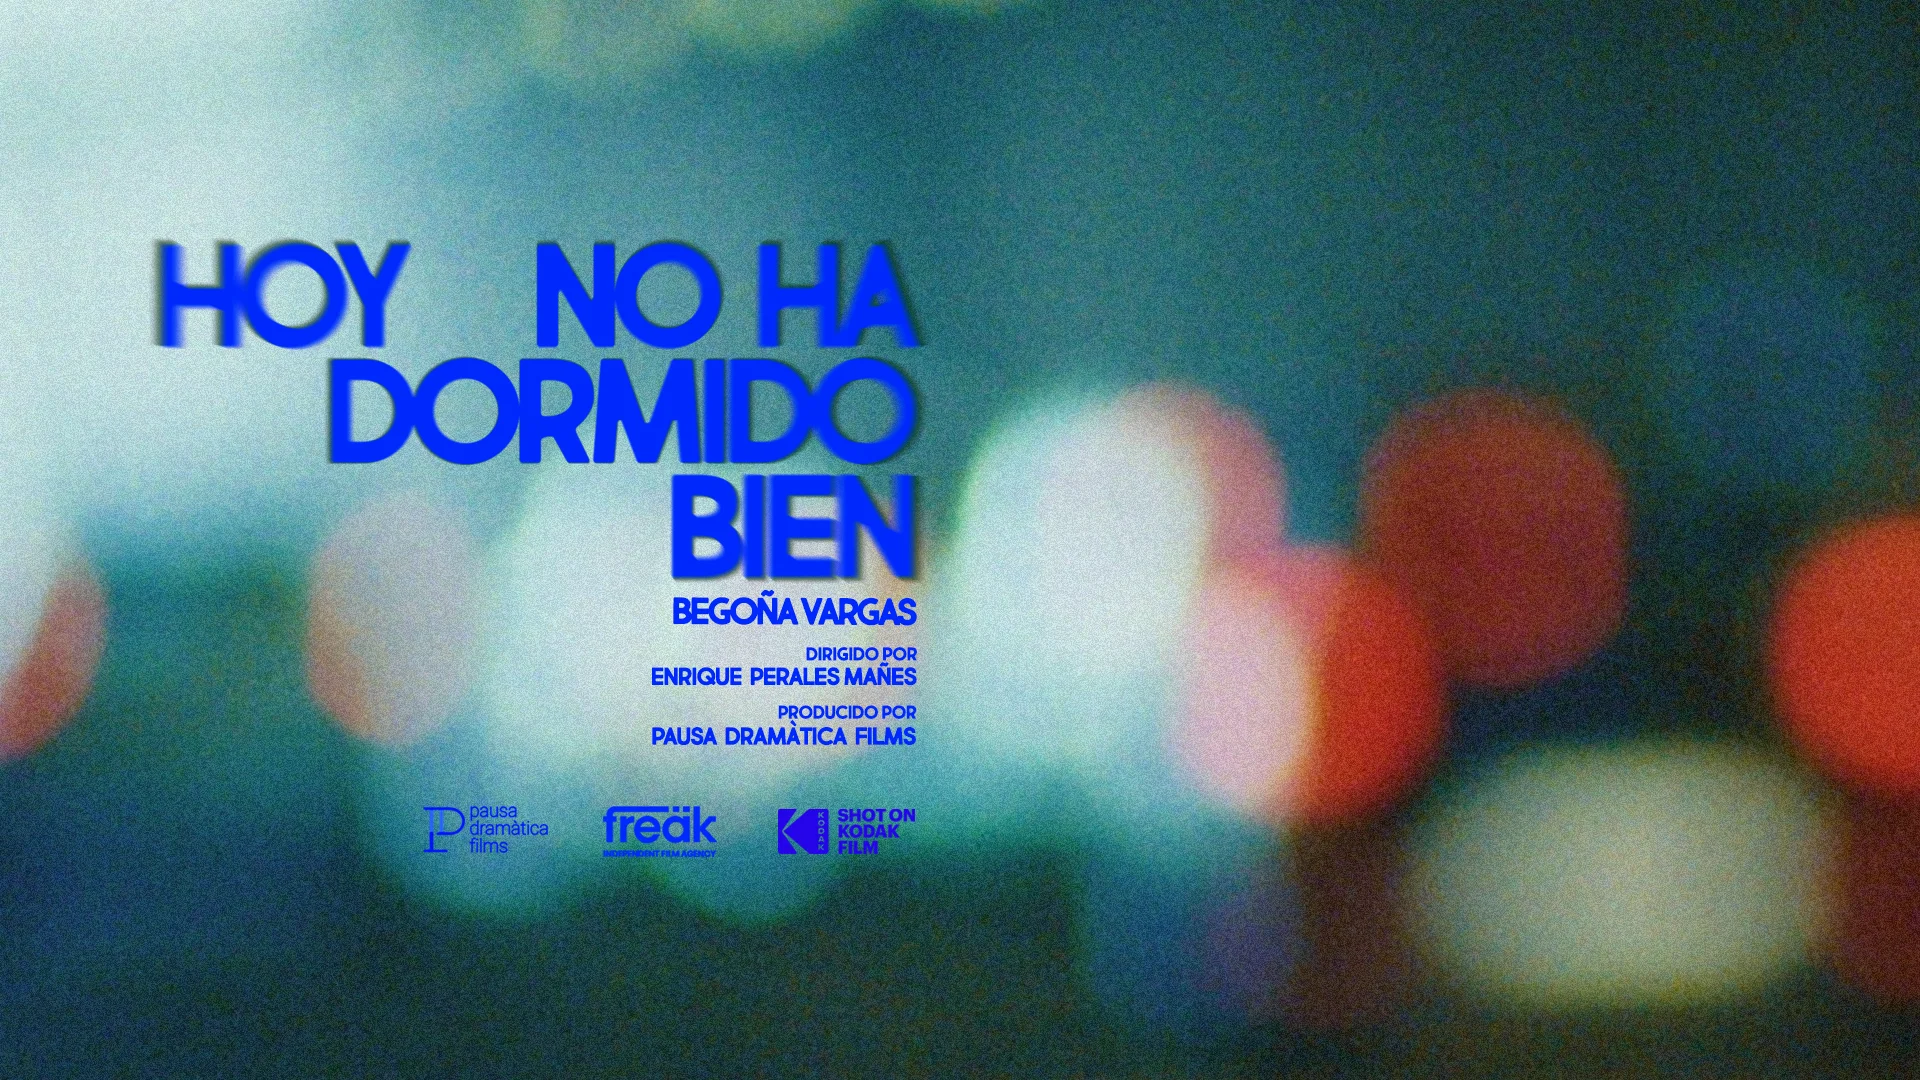 HOY NO HA DORMIDO BIEN, Enrique Perales [English trailer] on Vimeo